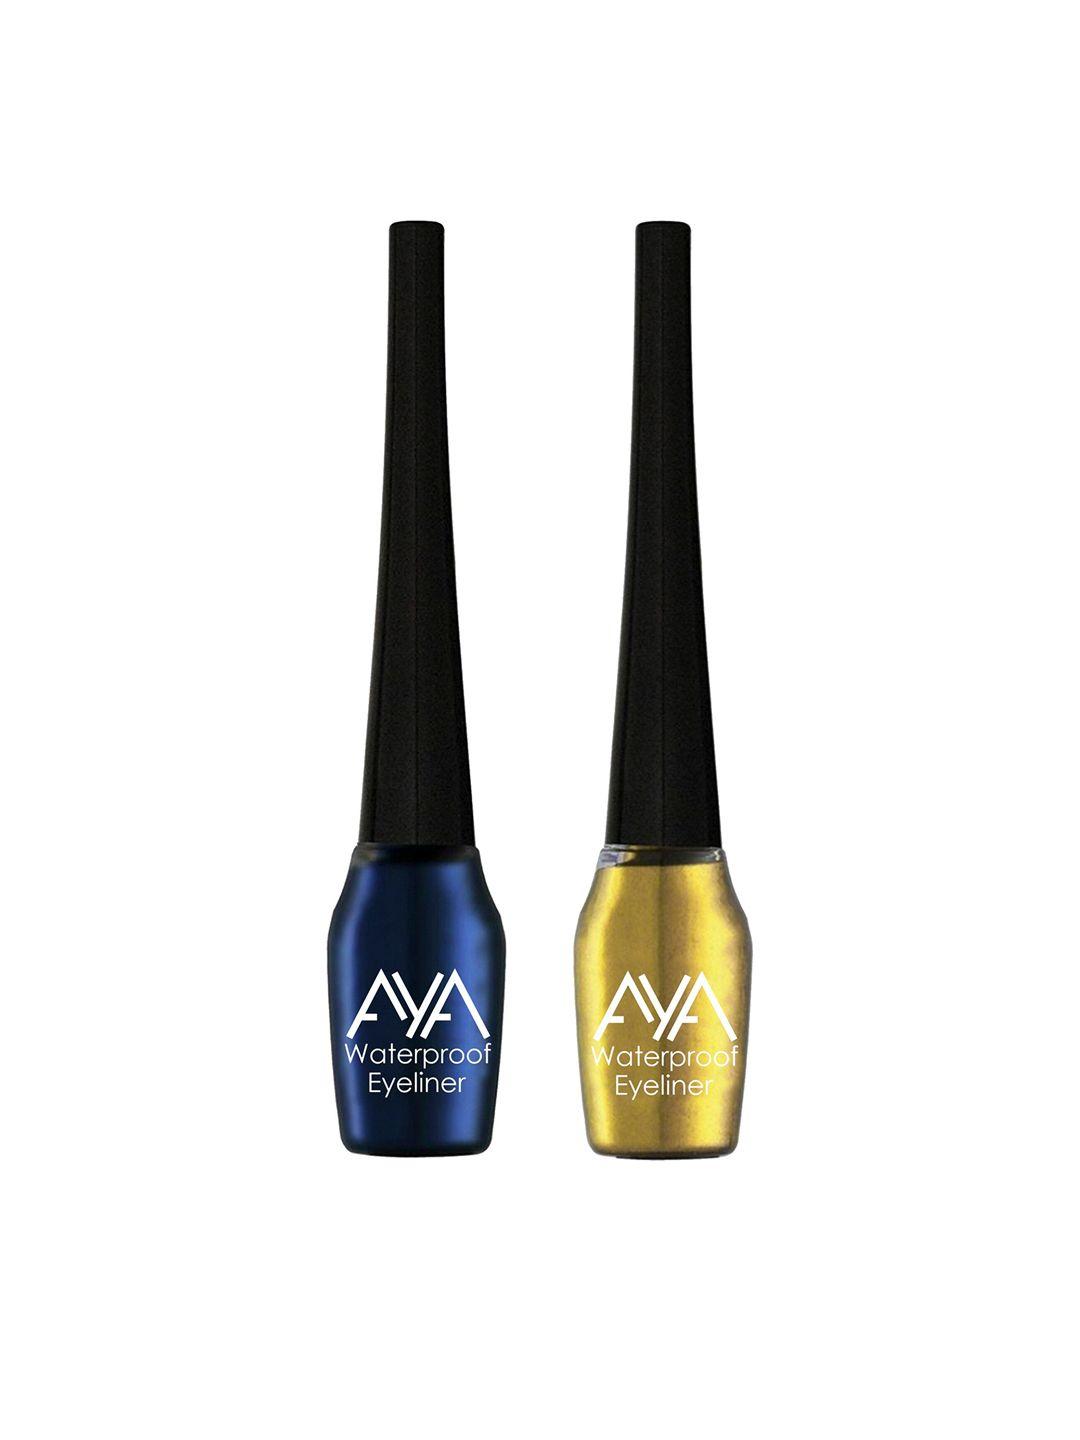 aya set of 2 blue and golden waterproof eyeliner 5ml each